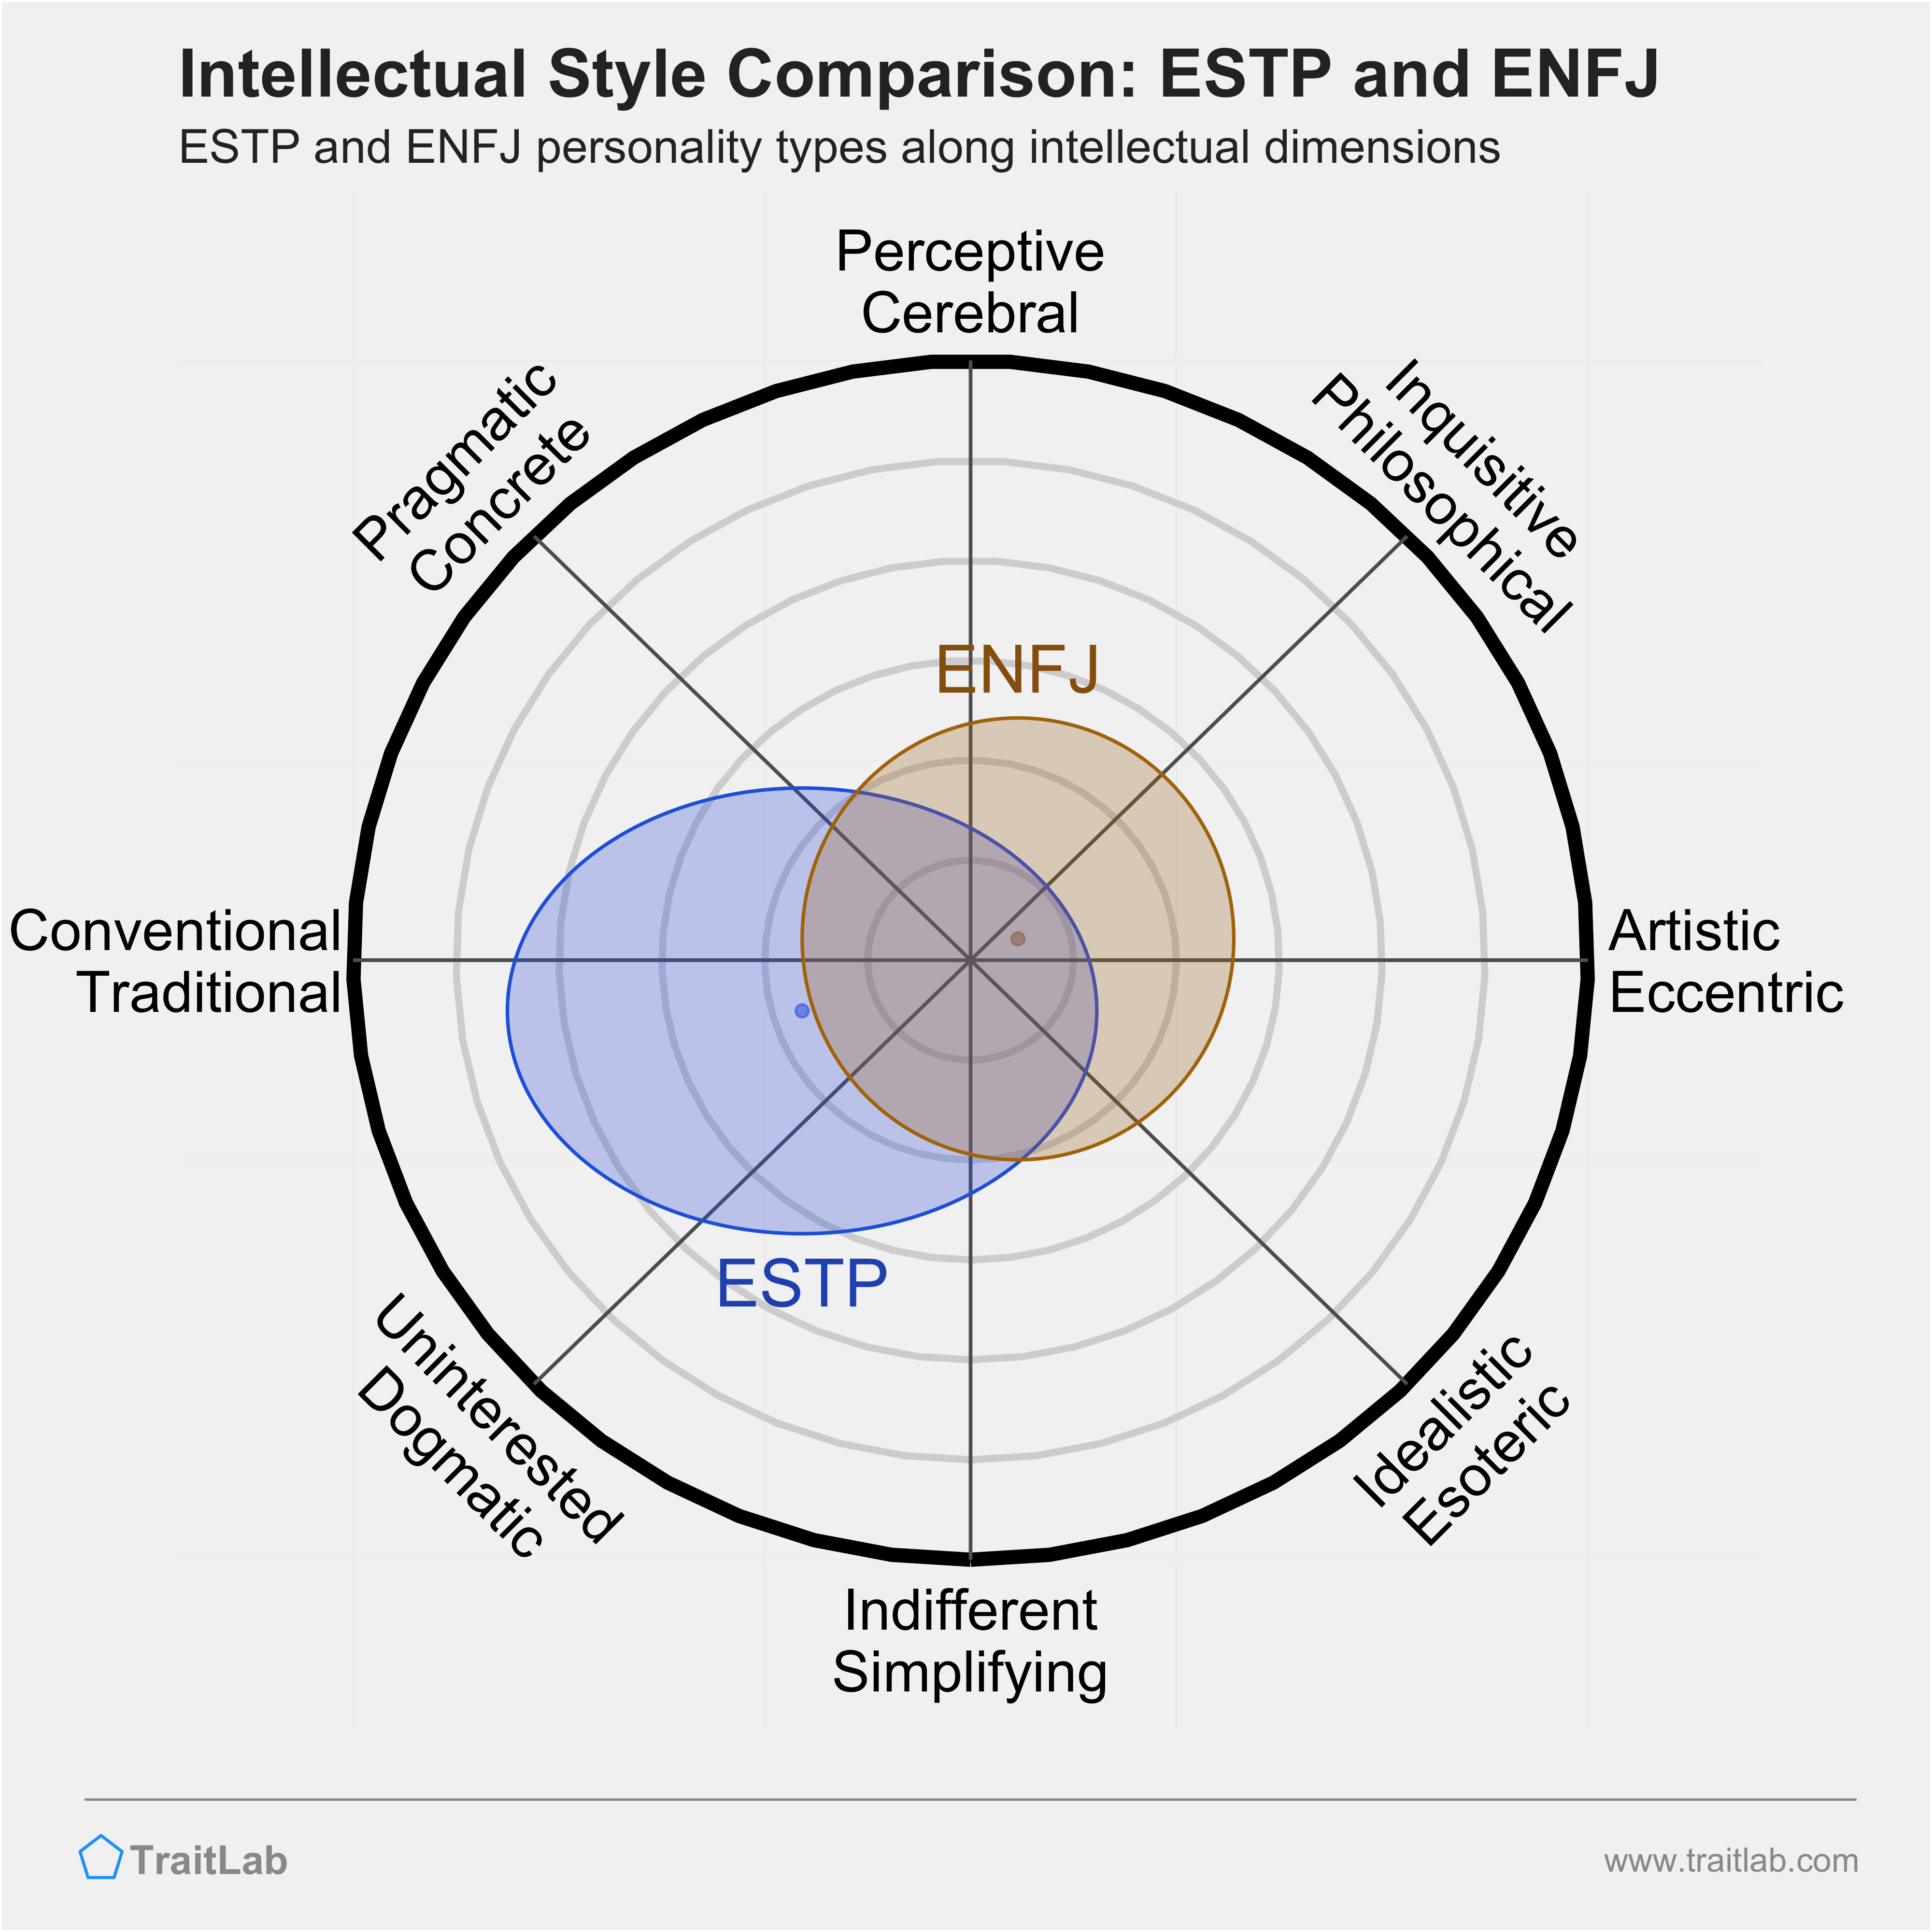 ESTP and ENFJ comparison across intellectual dimensions